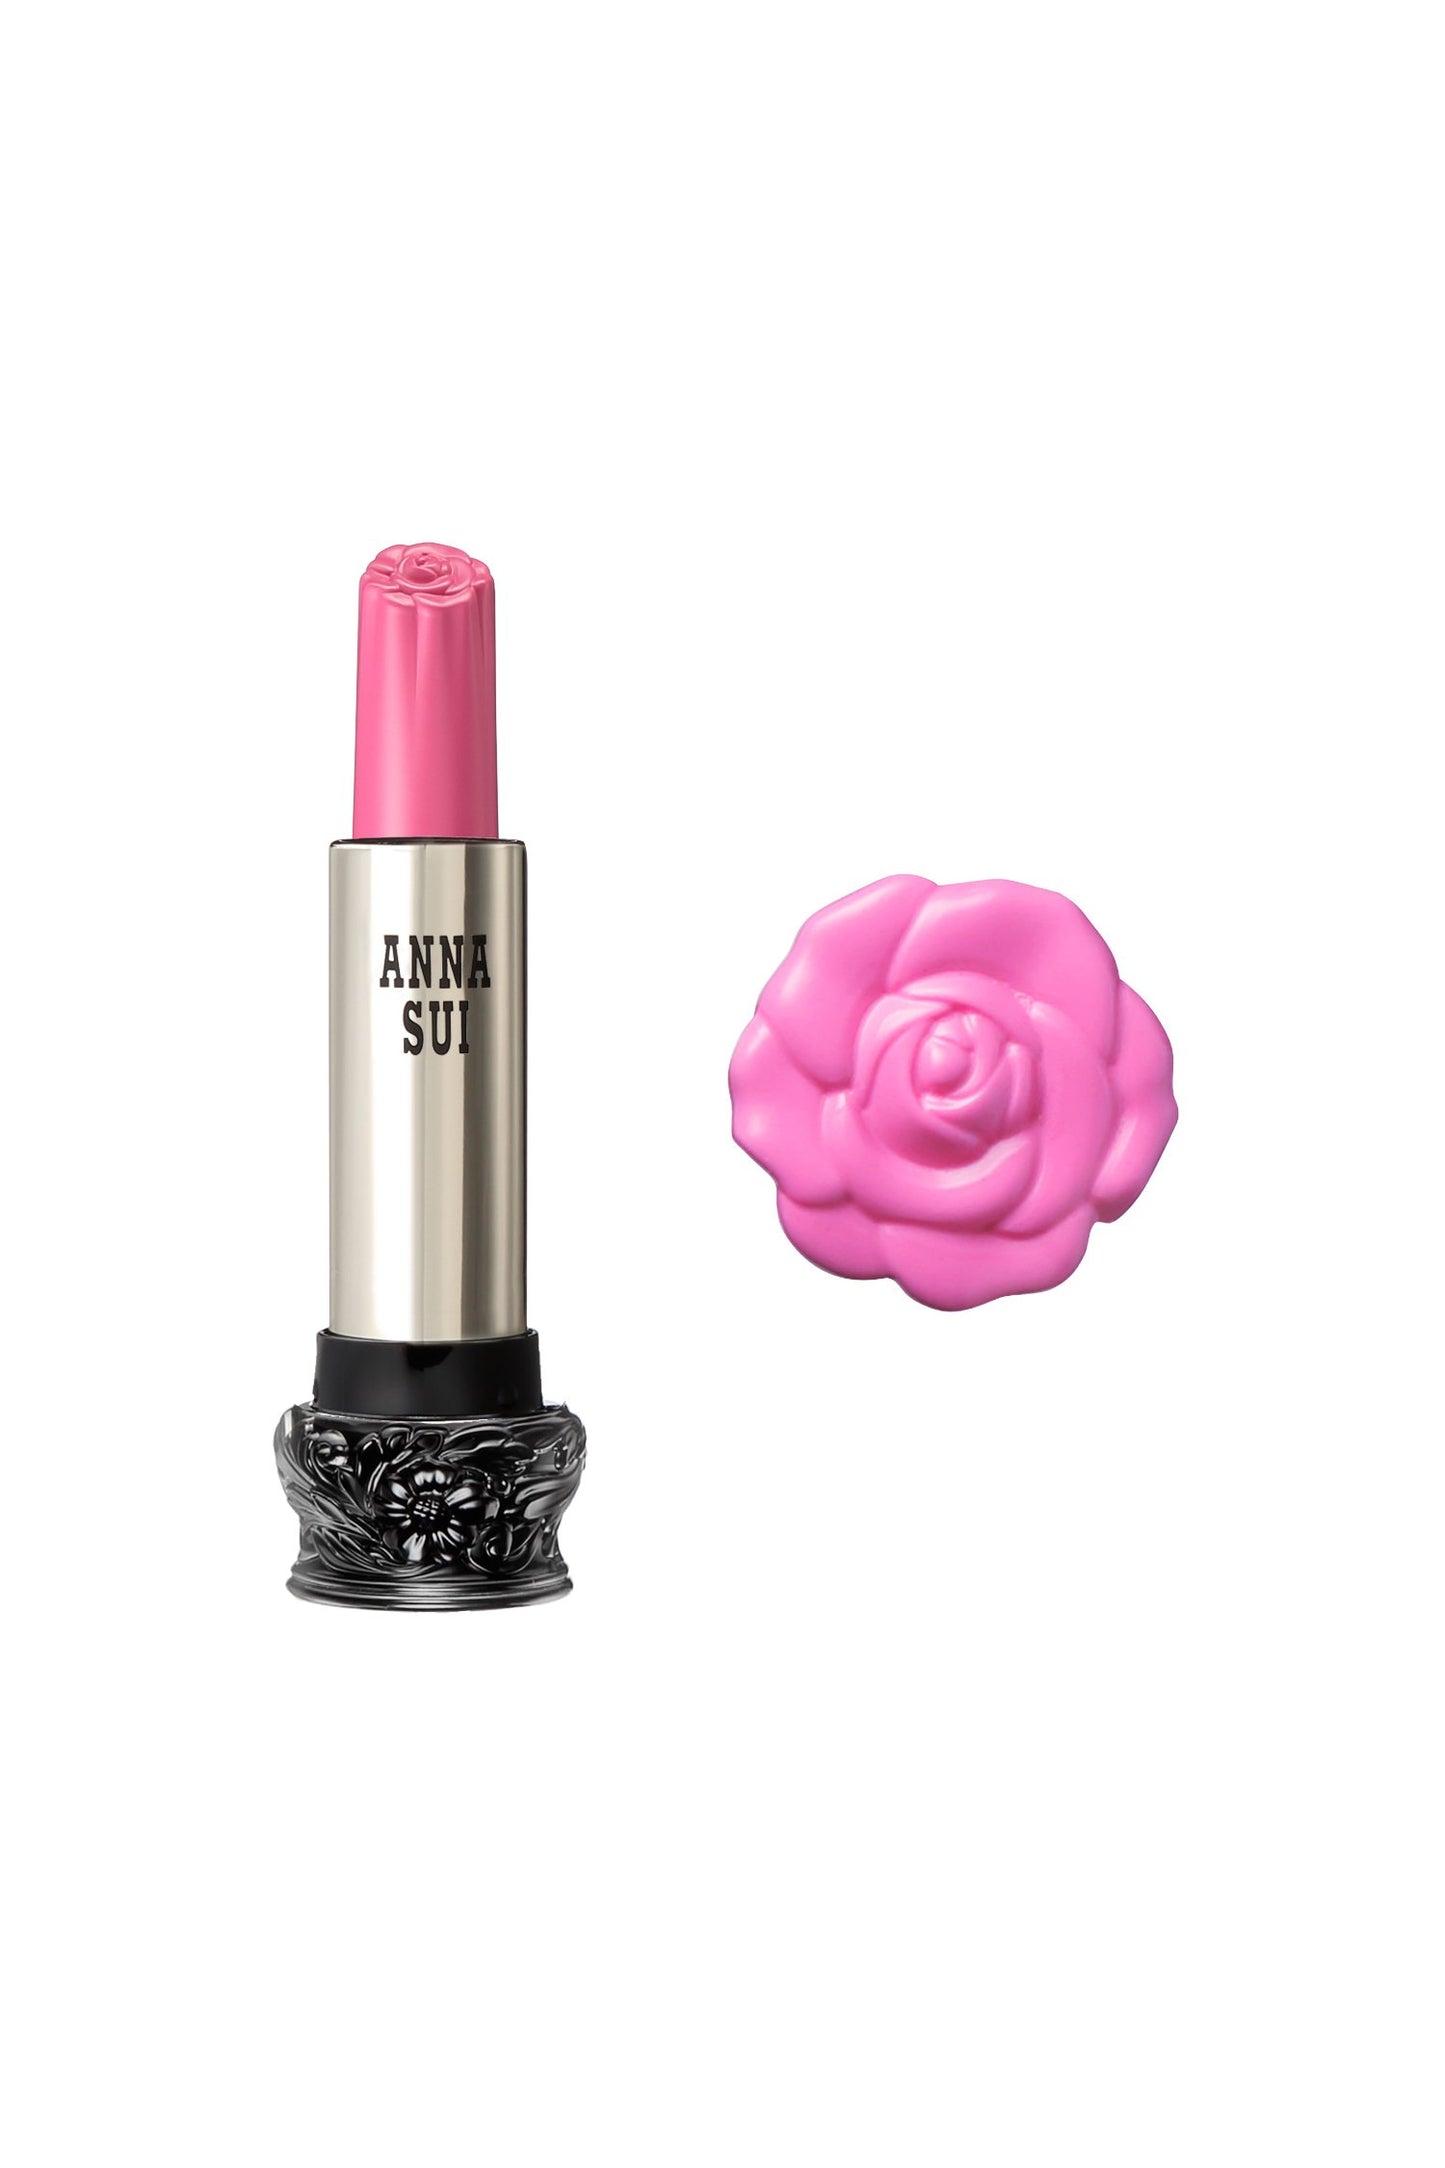 303 - Rossetto Cosmos rosa F: Fairy Flower, in contenitore cilindrico, ampia base nera, disegno floreale inciso, corpo metallico